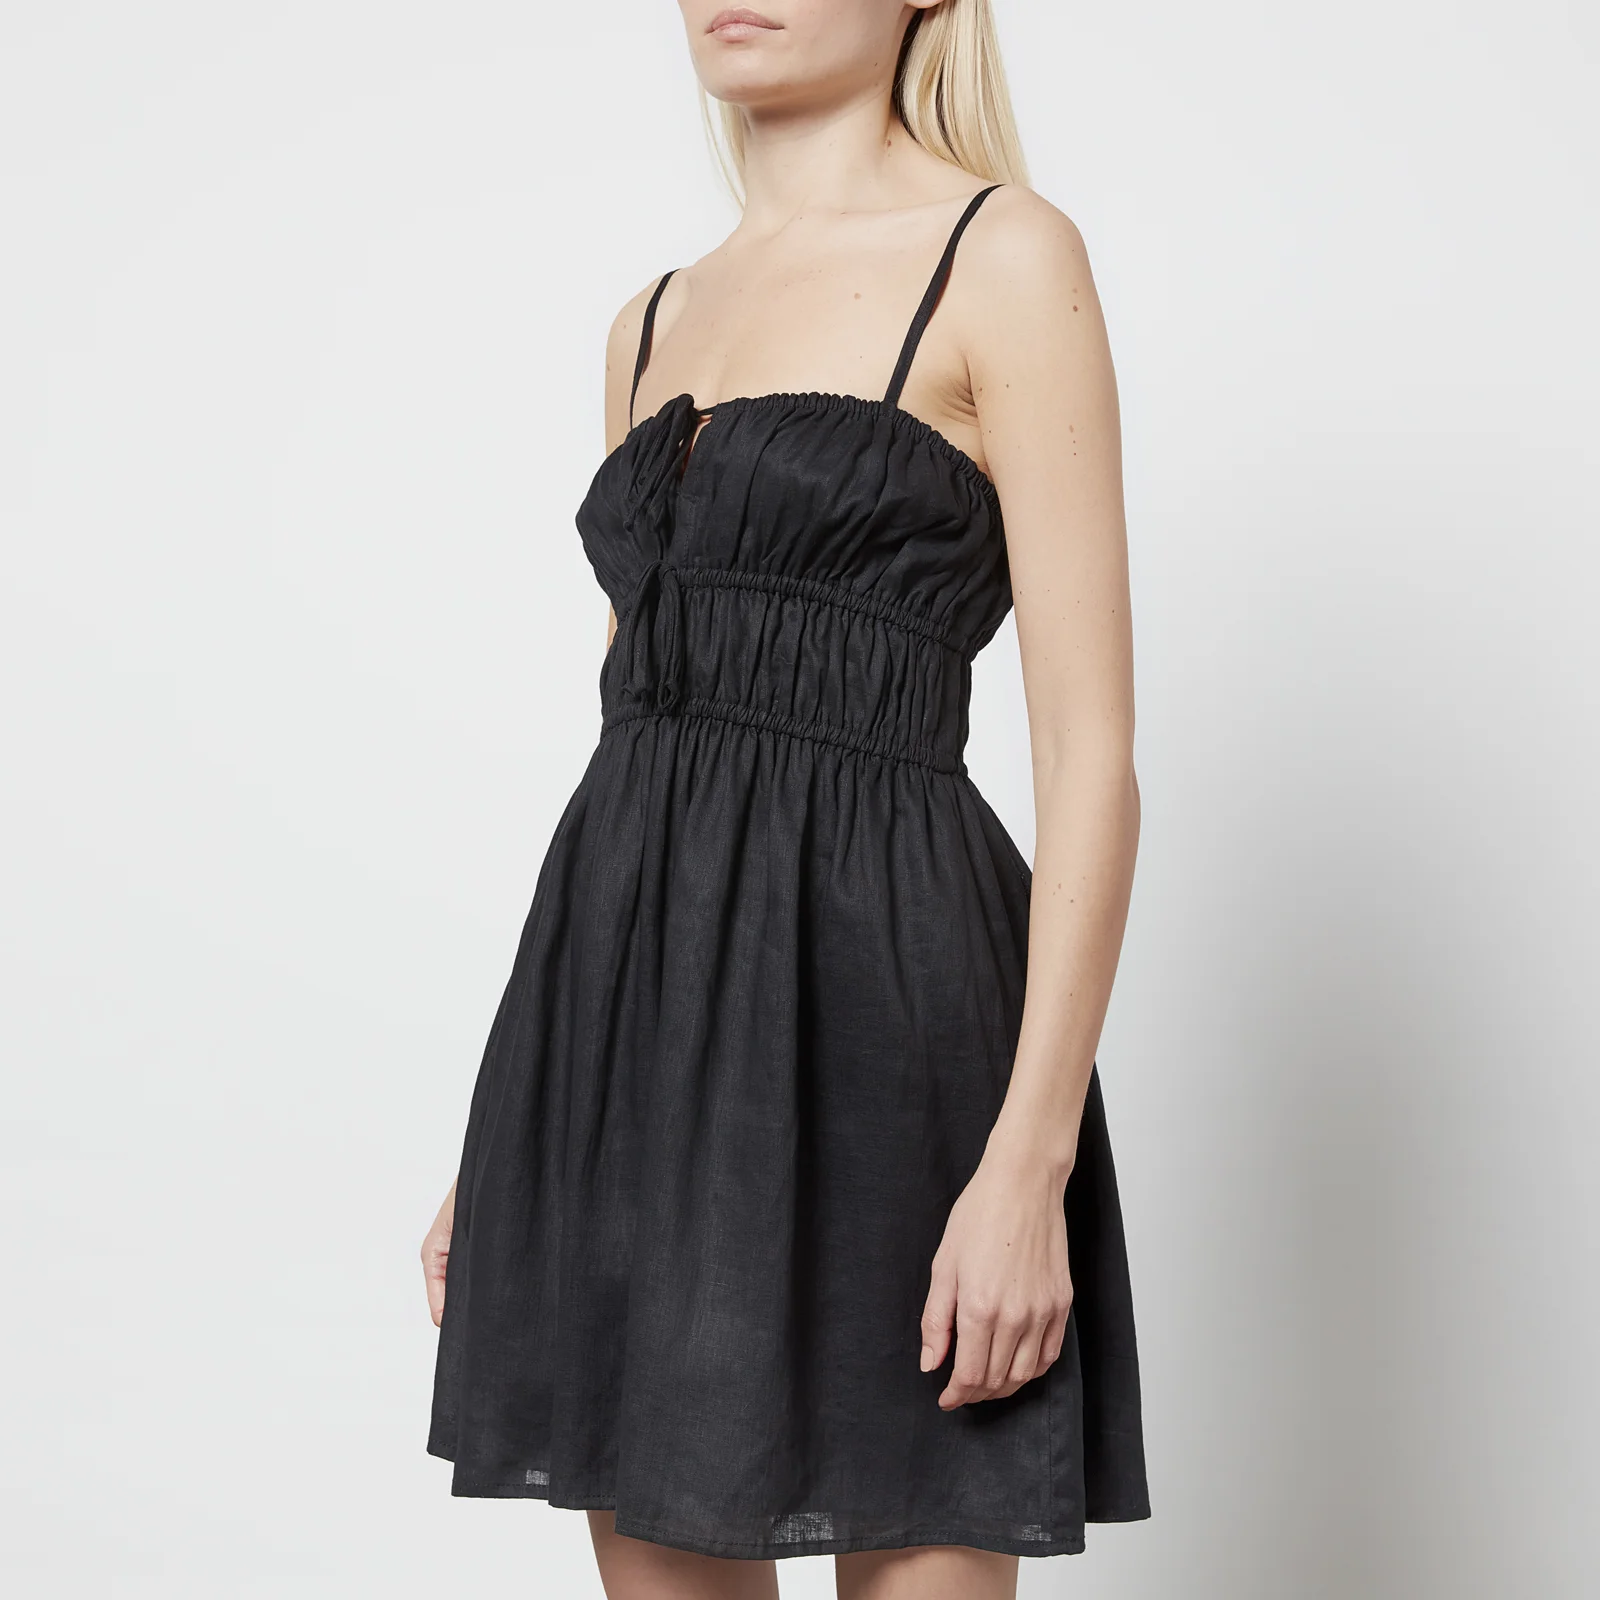 Faithfull The Brand Women's Shivka Mini Dress - Plain Black Image 1